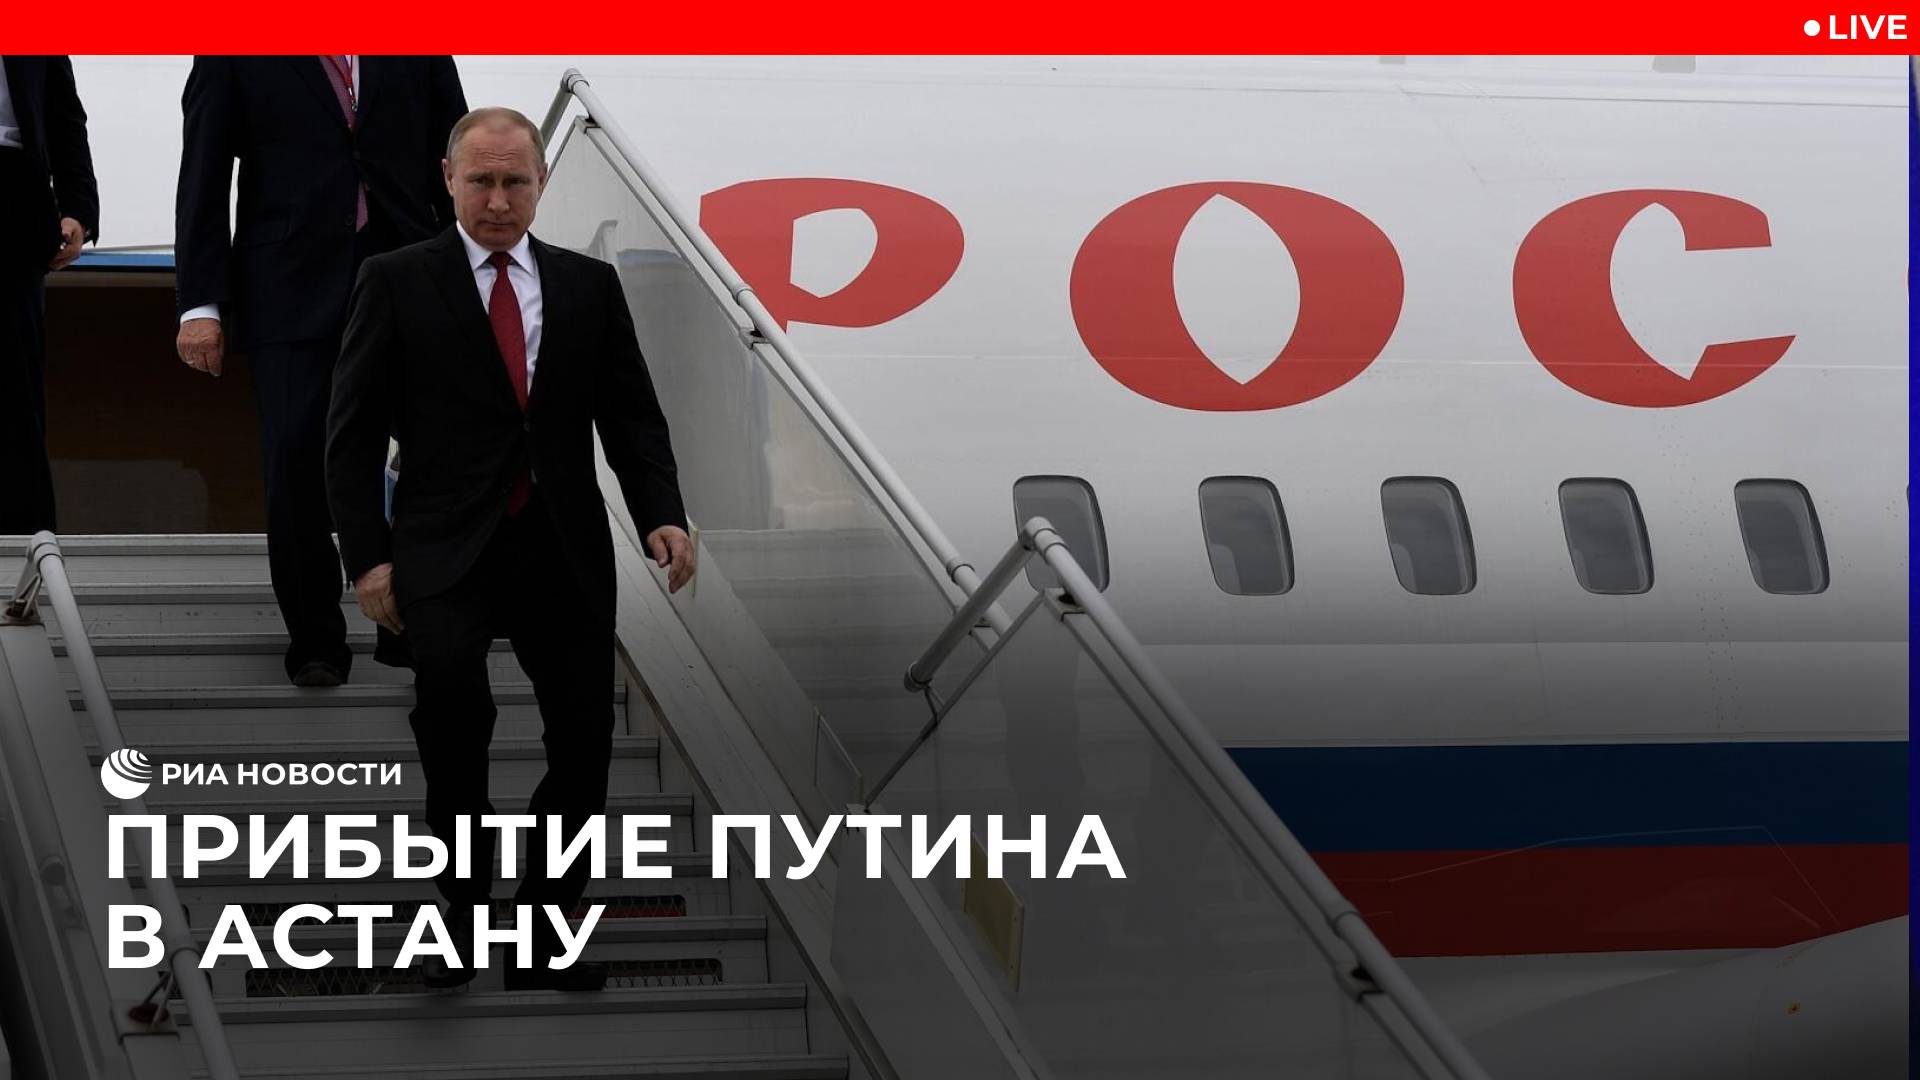 Прибытие Путина в Астану